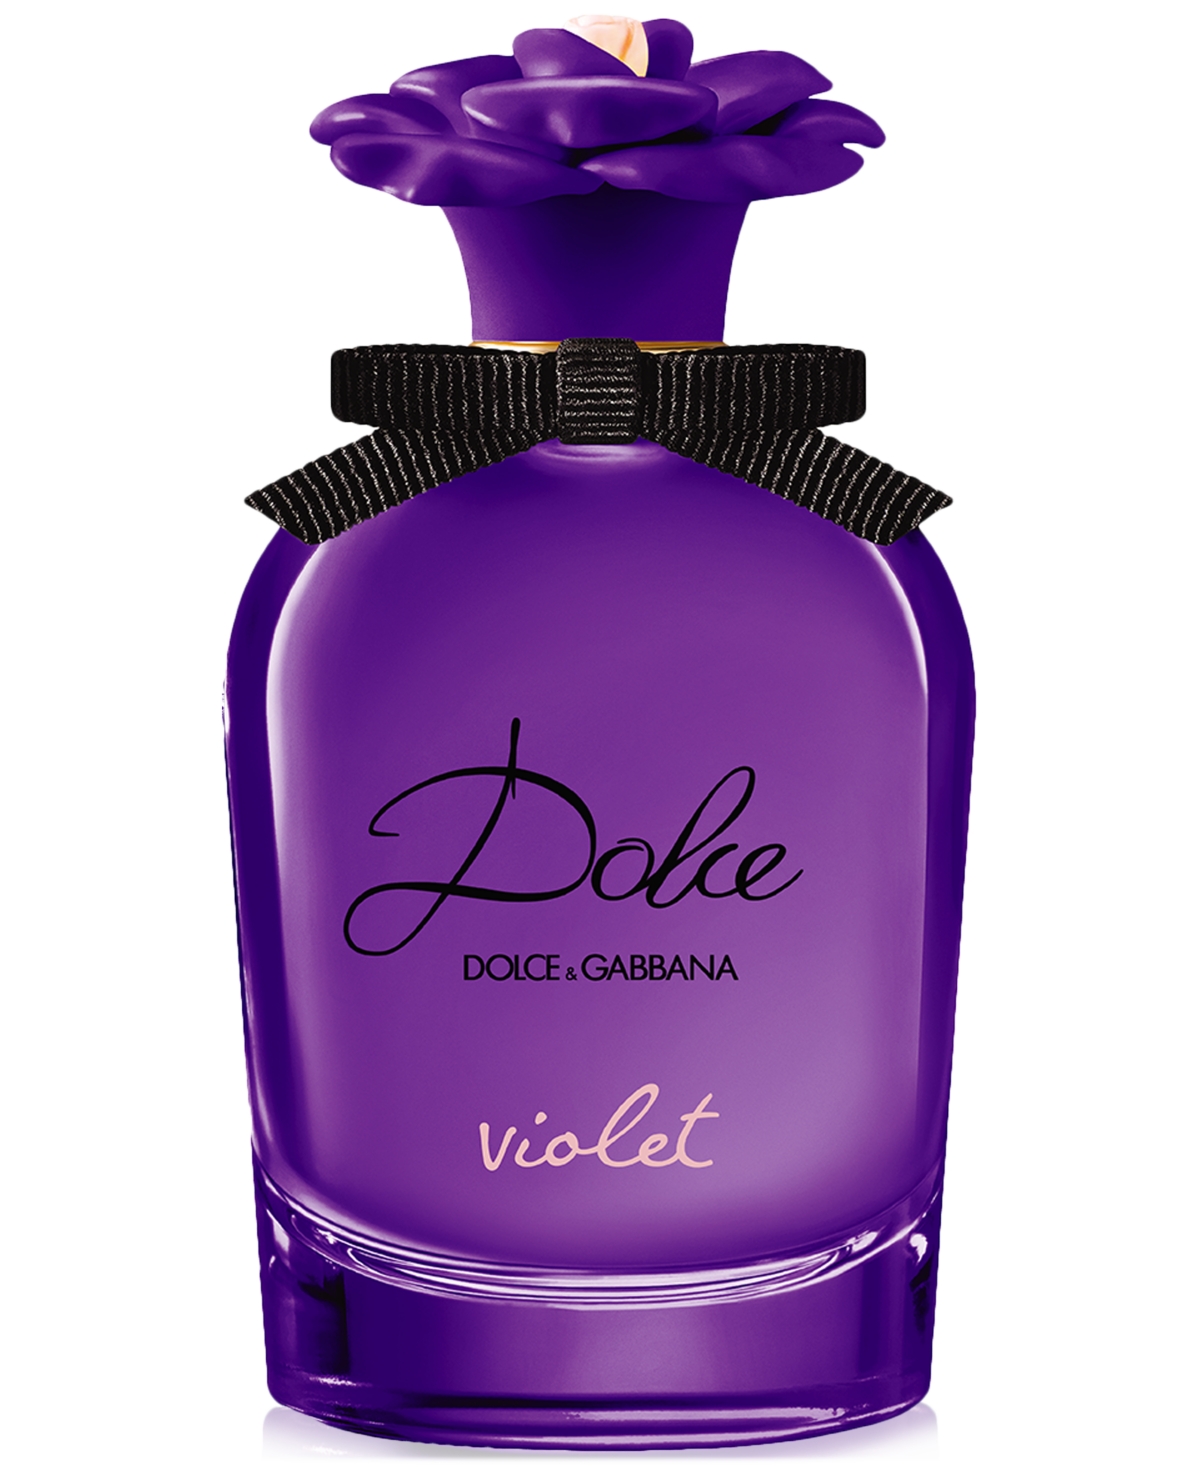 Dolce&Gabbana Dolce Violet Eau de Toilette, 2.5 oz.